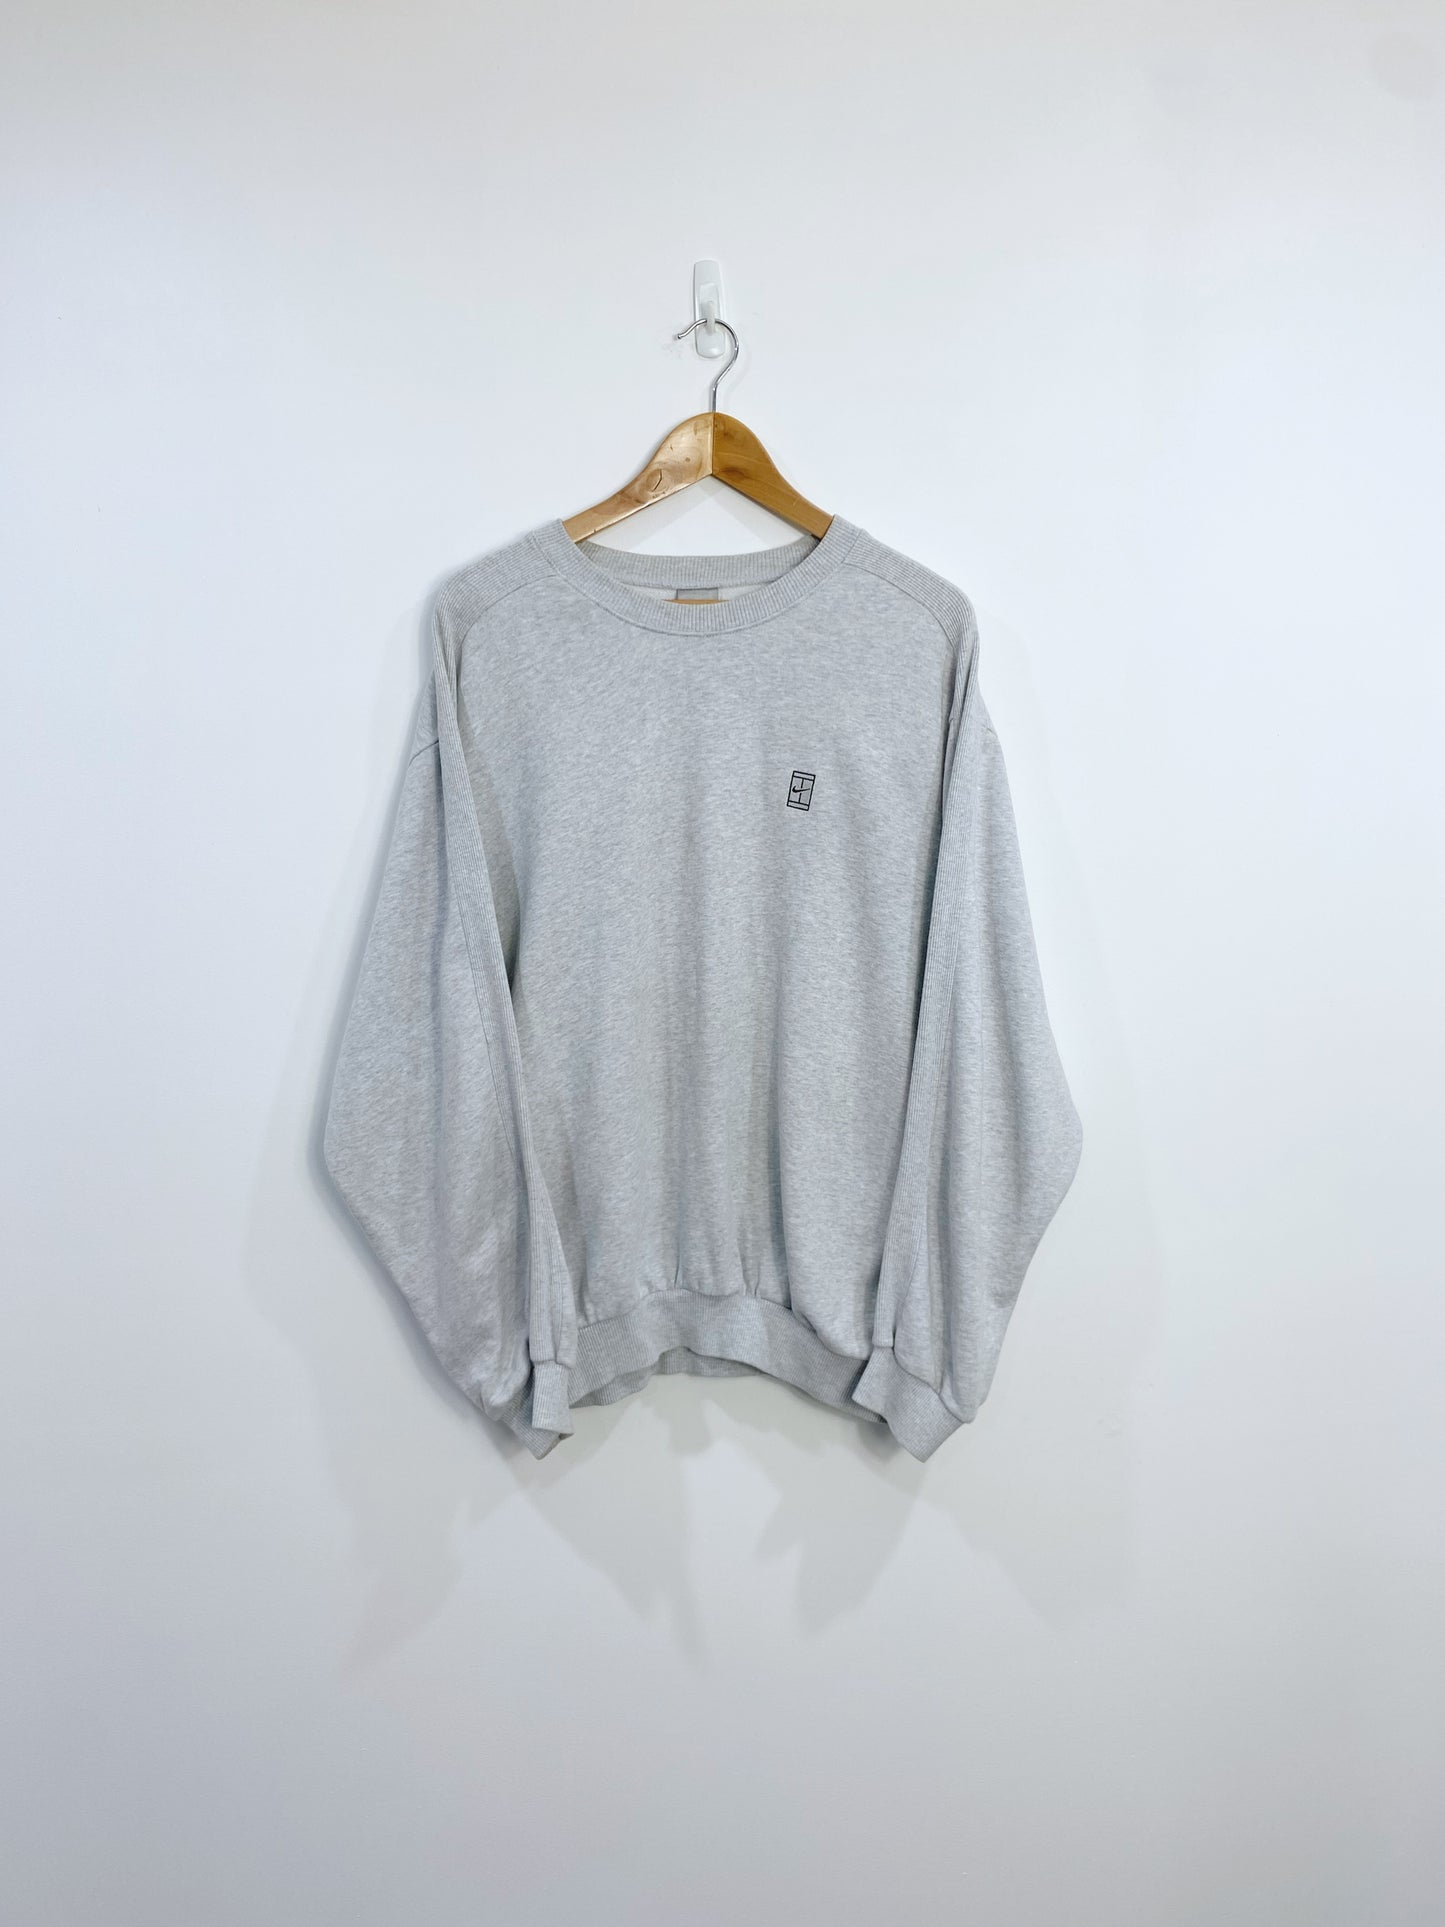 Vintage Nike Embroidered Sweatshirt L